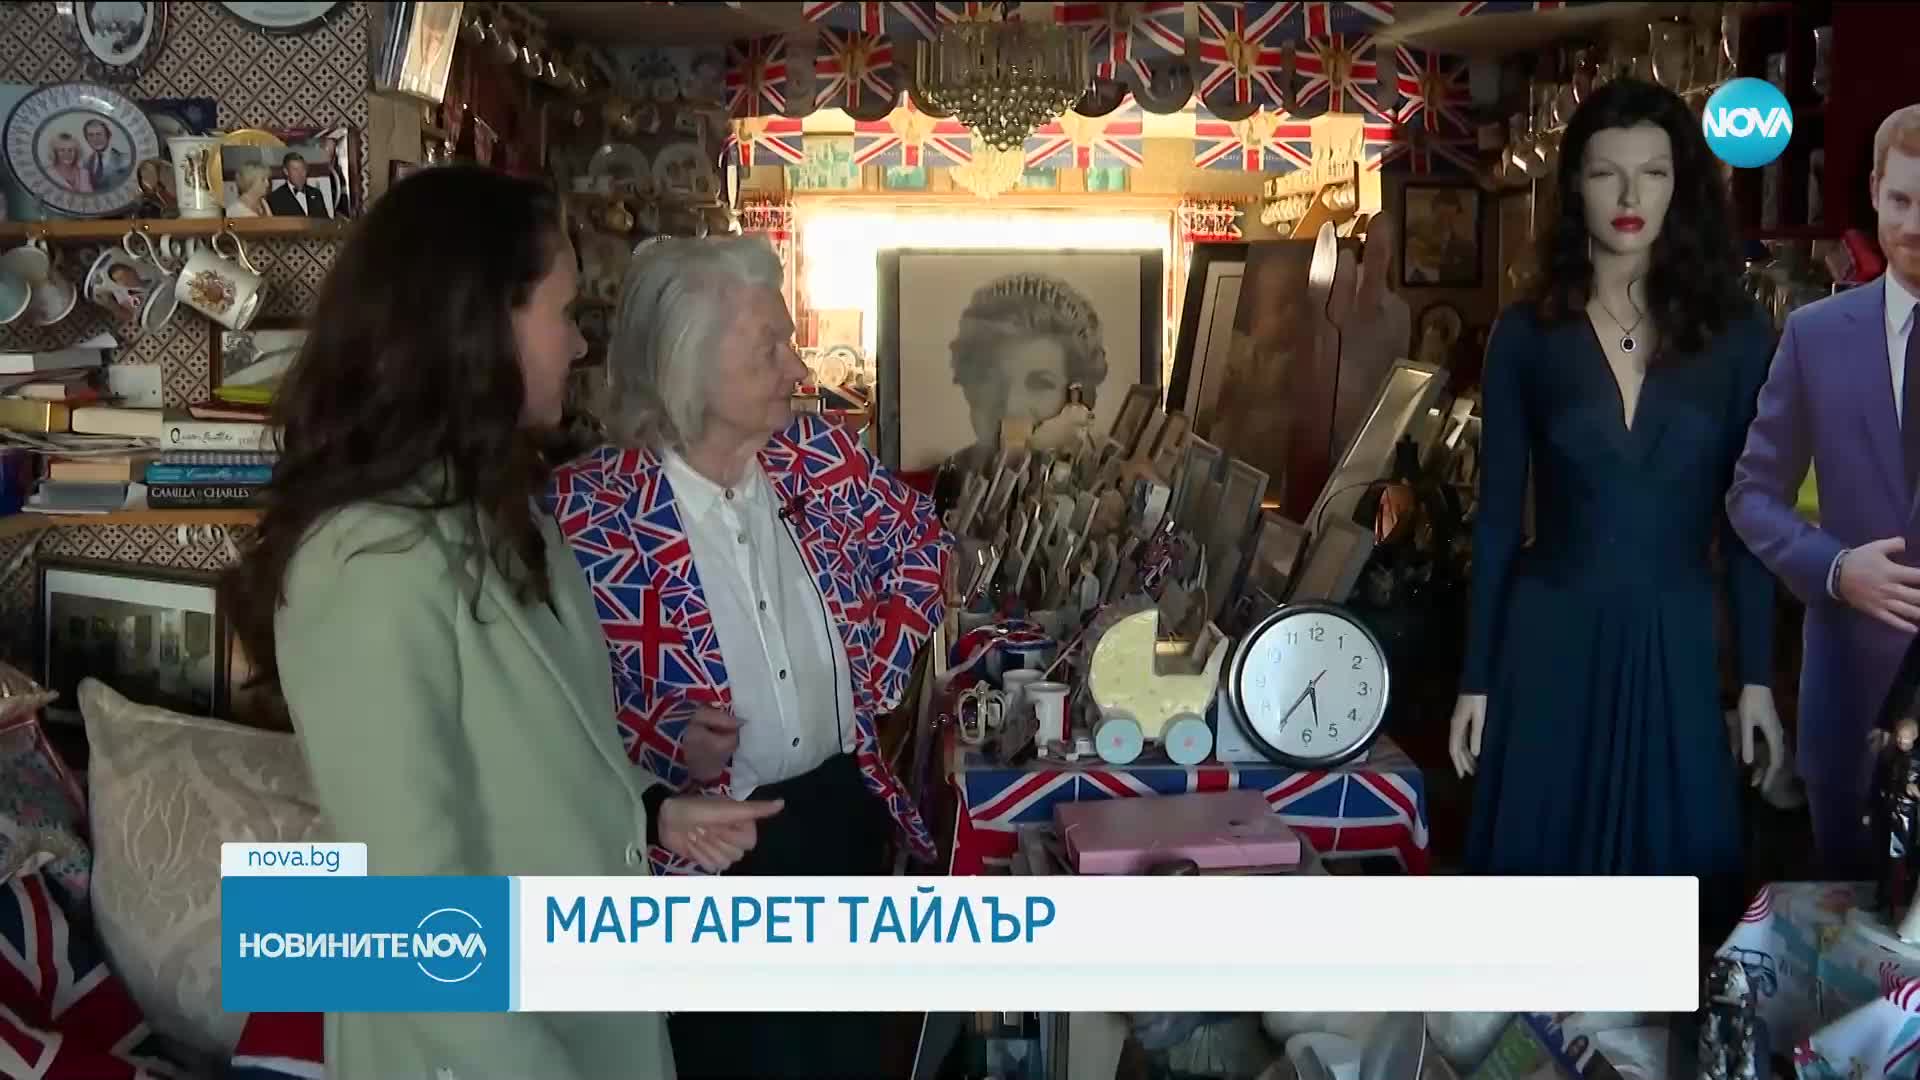 Жена колекционира сувенири на кралското семейство от над 40 години